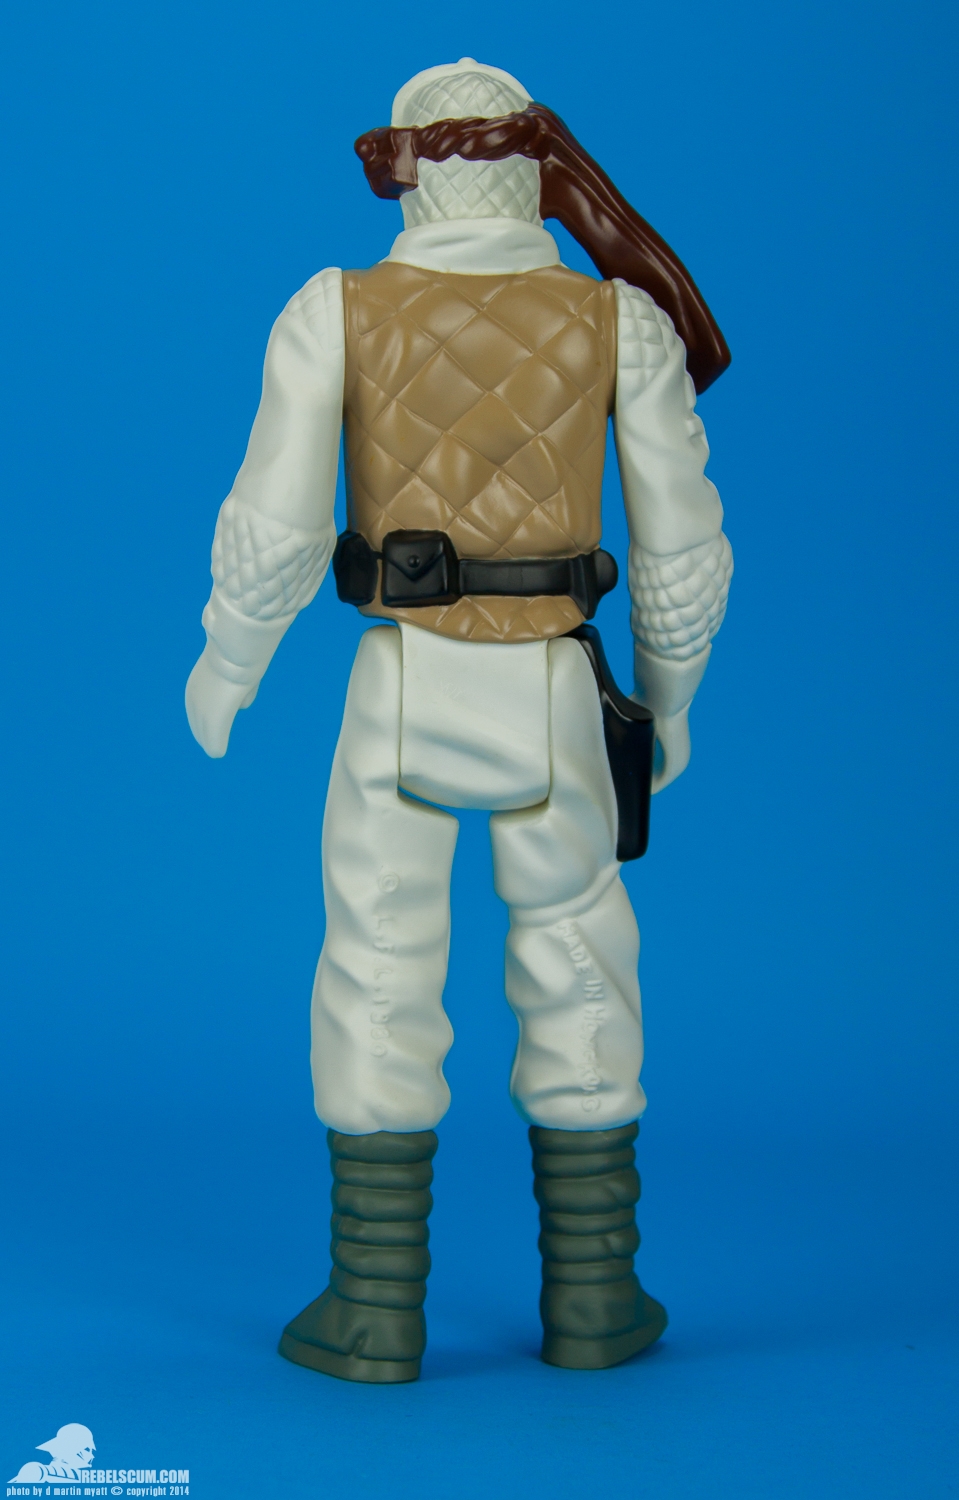 Luke-Skywalker-Hoth-Battle-Gear-Gentle-Giant-Ltd-Jumbo-Kenner-004.jpg